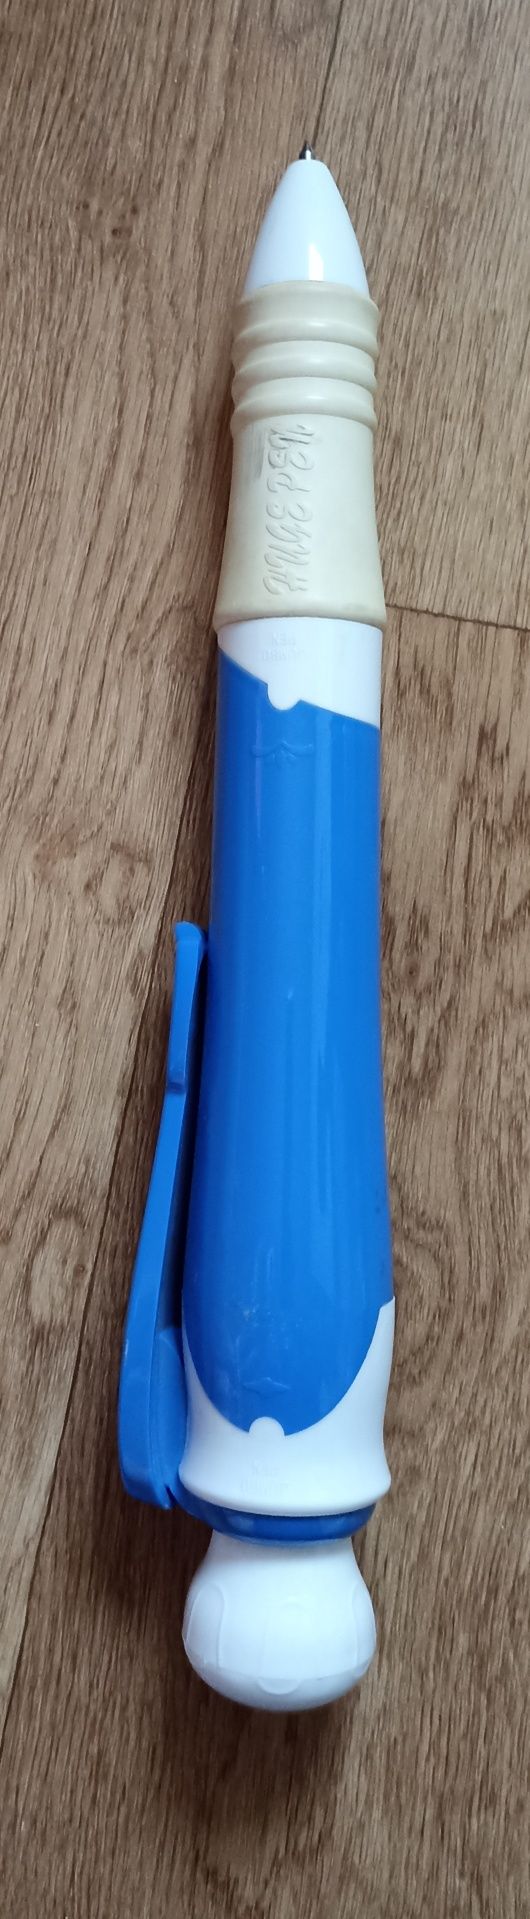 Ручка-гігант 44 см розбірна синя